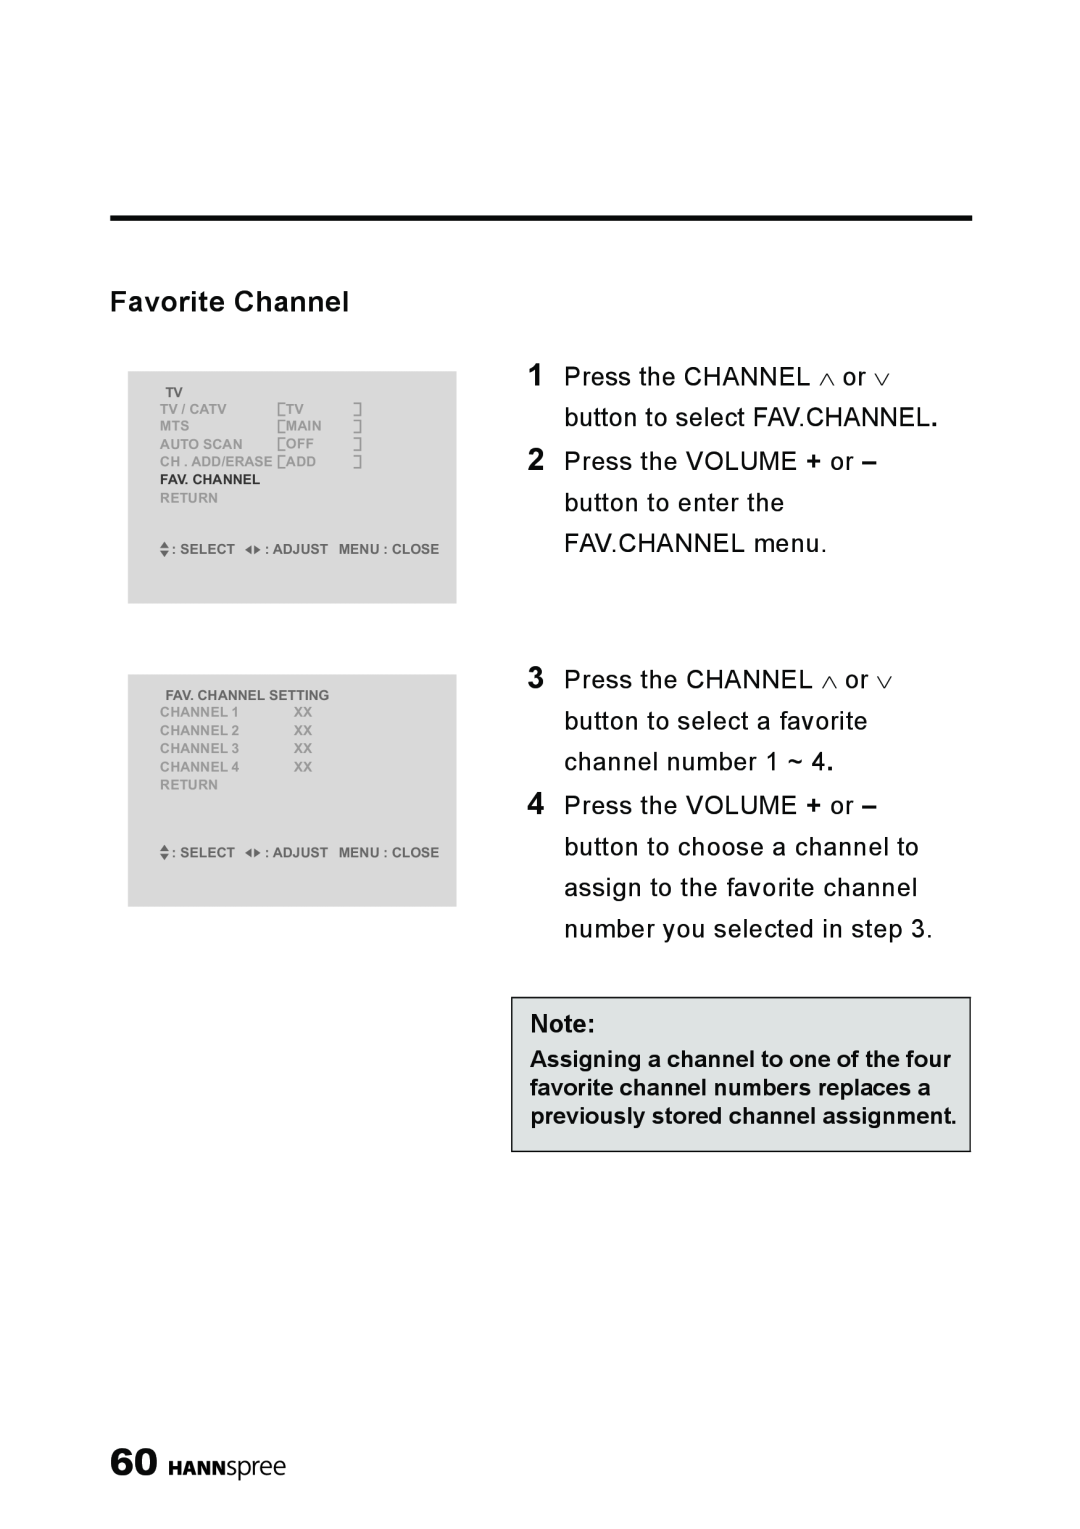 HANNspree LT11-23A1 user manual Favorite Channel 